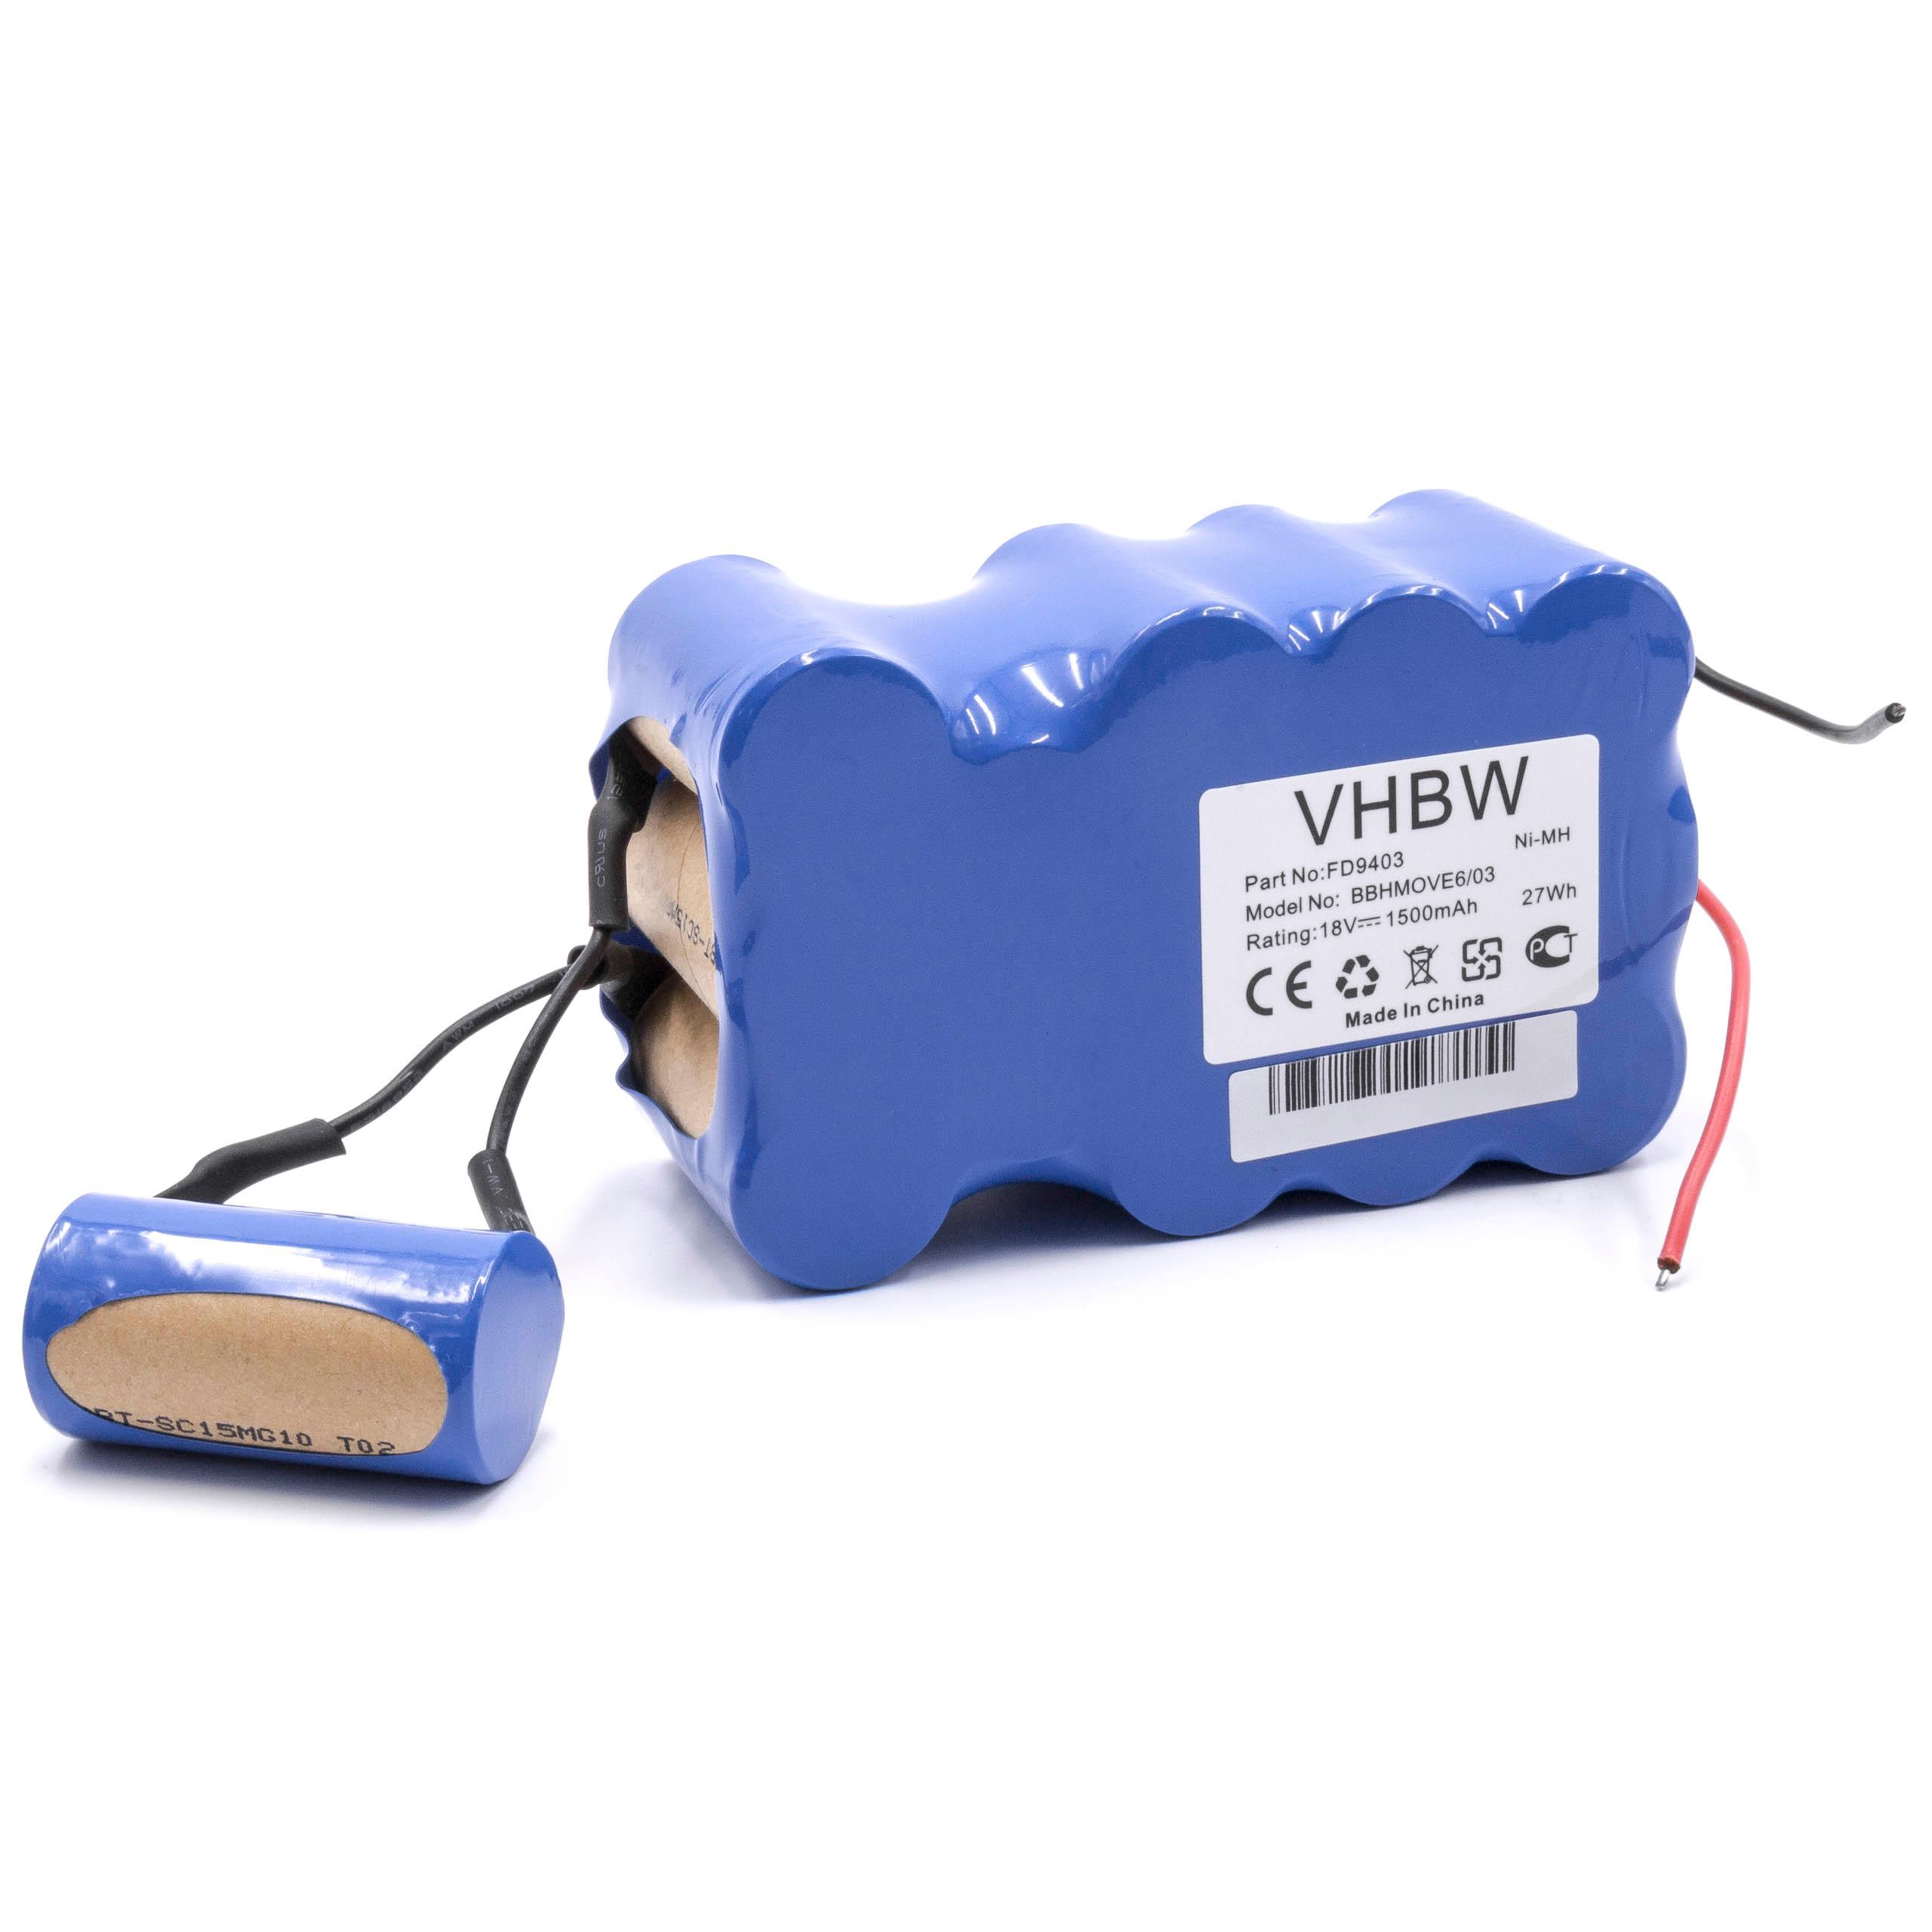 Akumulator do odkurzacza zamiennik Bosch 751993, FD9403, 100W + 10W, FD9403 - 1500 mAh 18 V NiMH